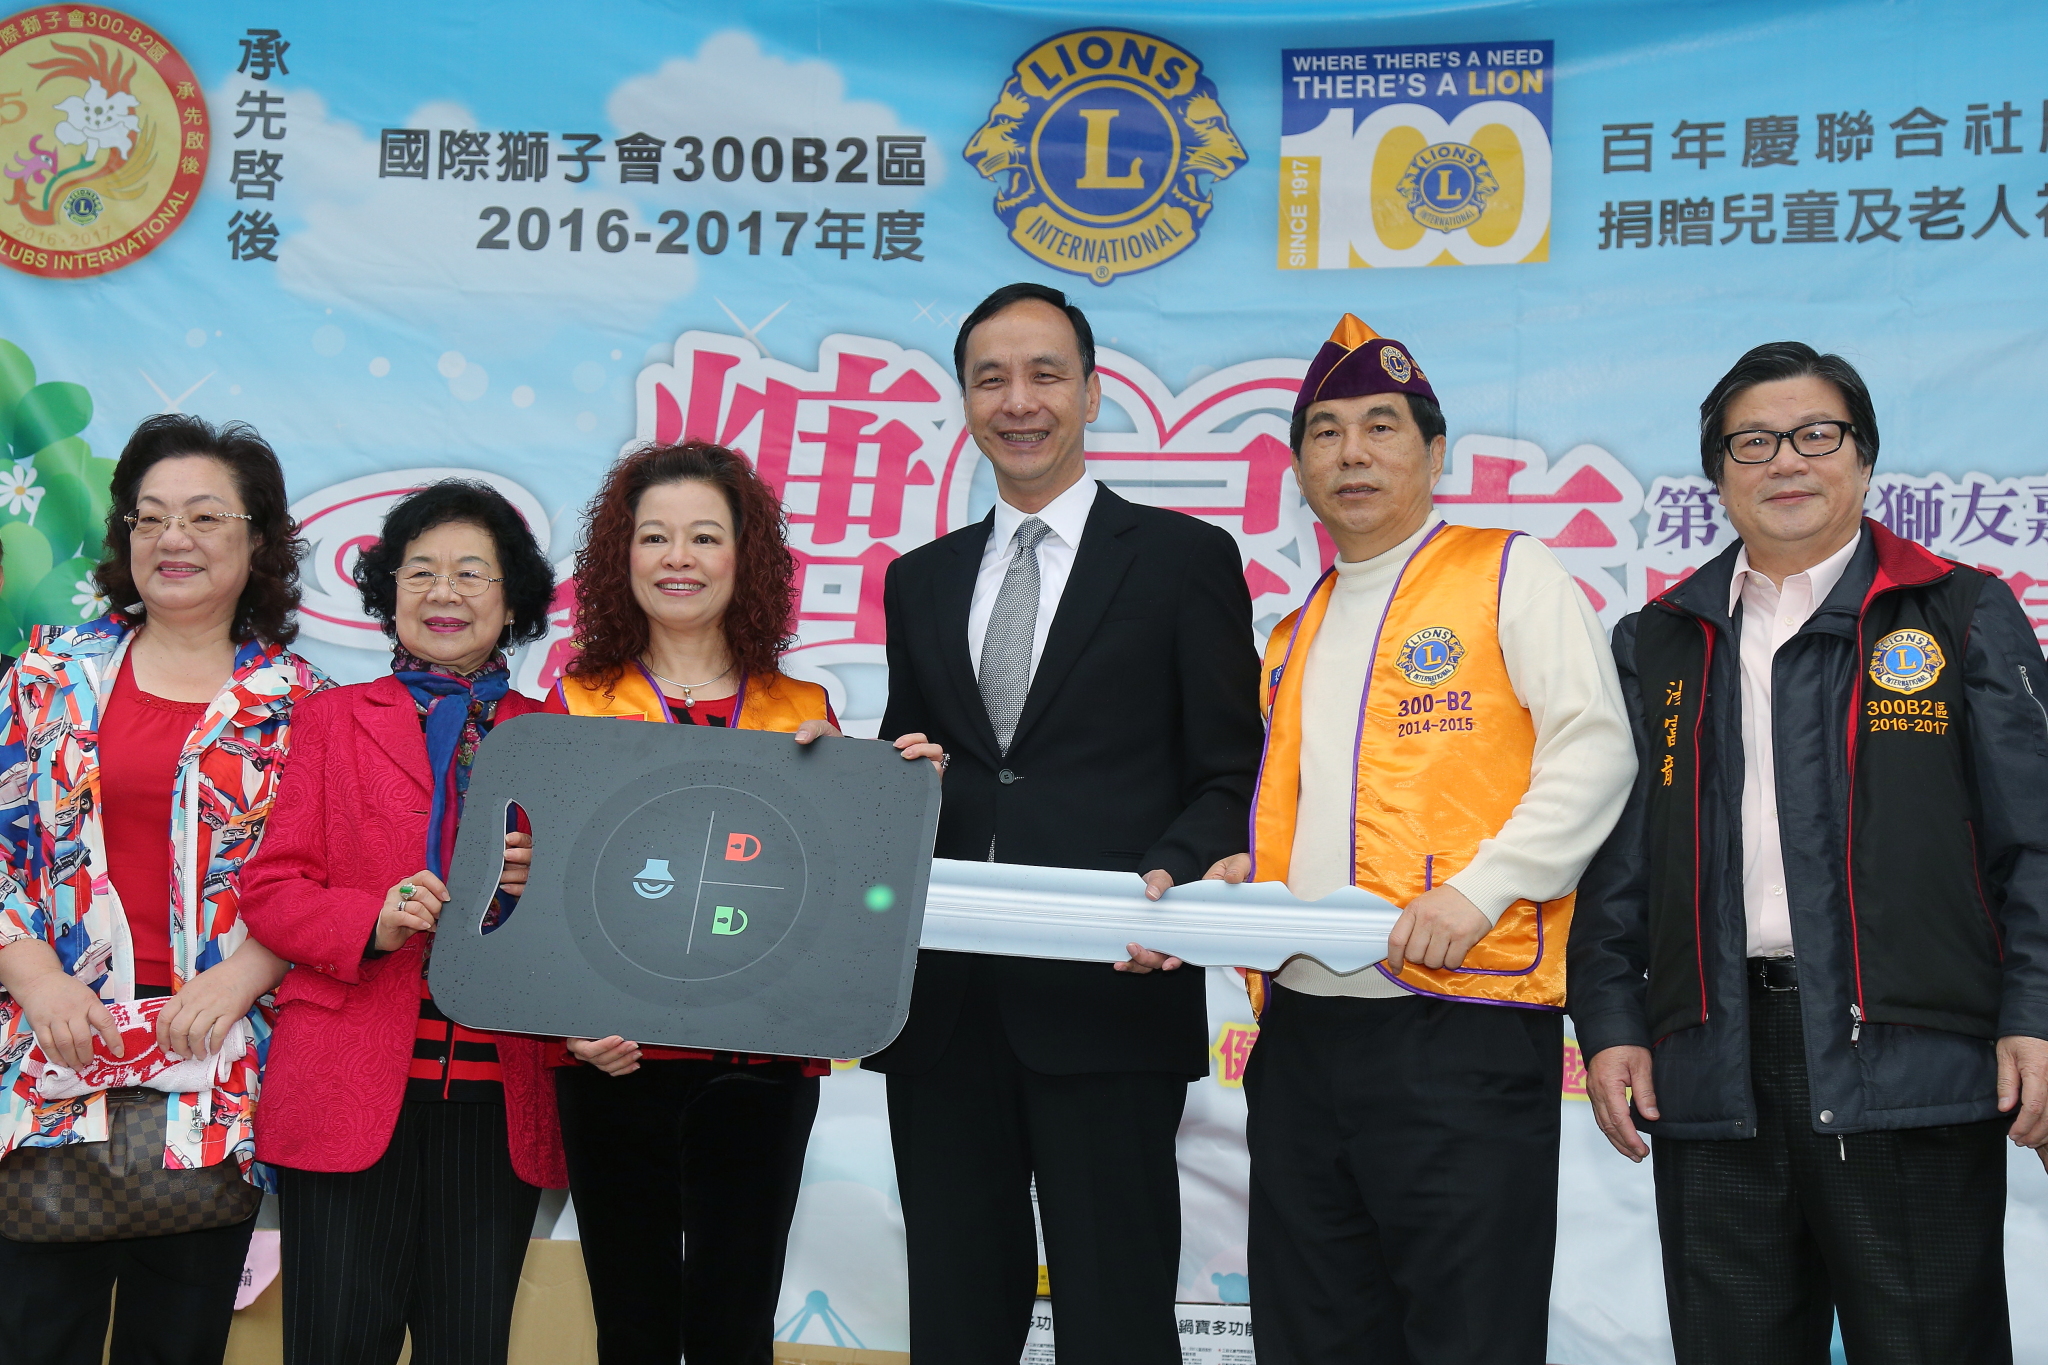 朱市長感謝國際獅子會熱心公益捐贈護眼專車造福民眾